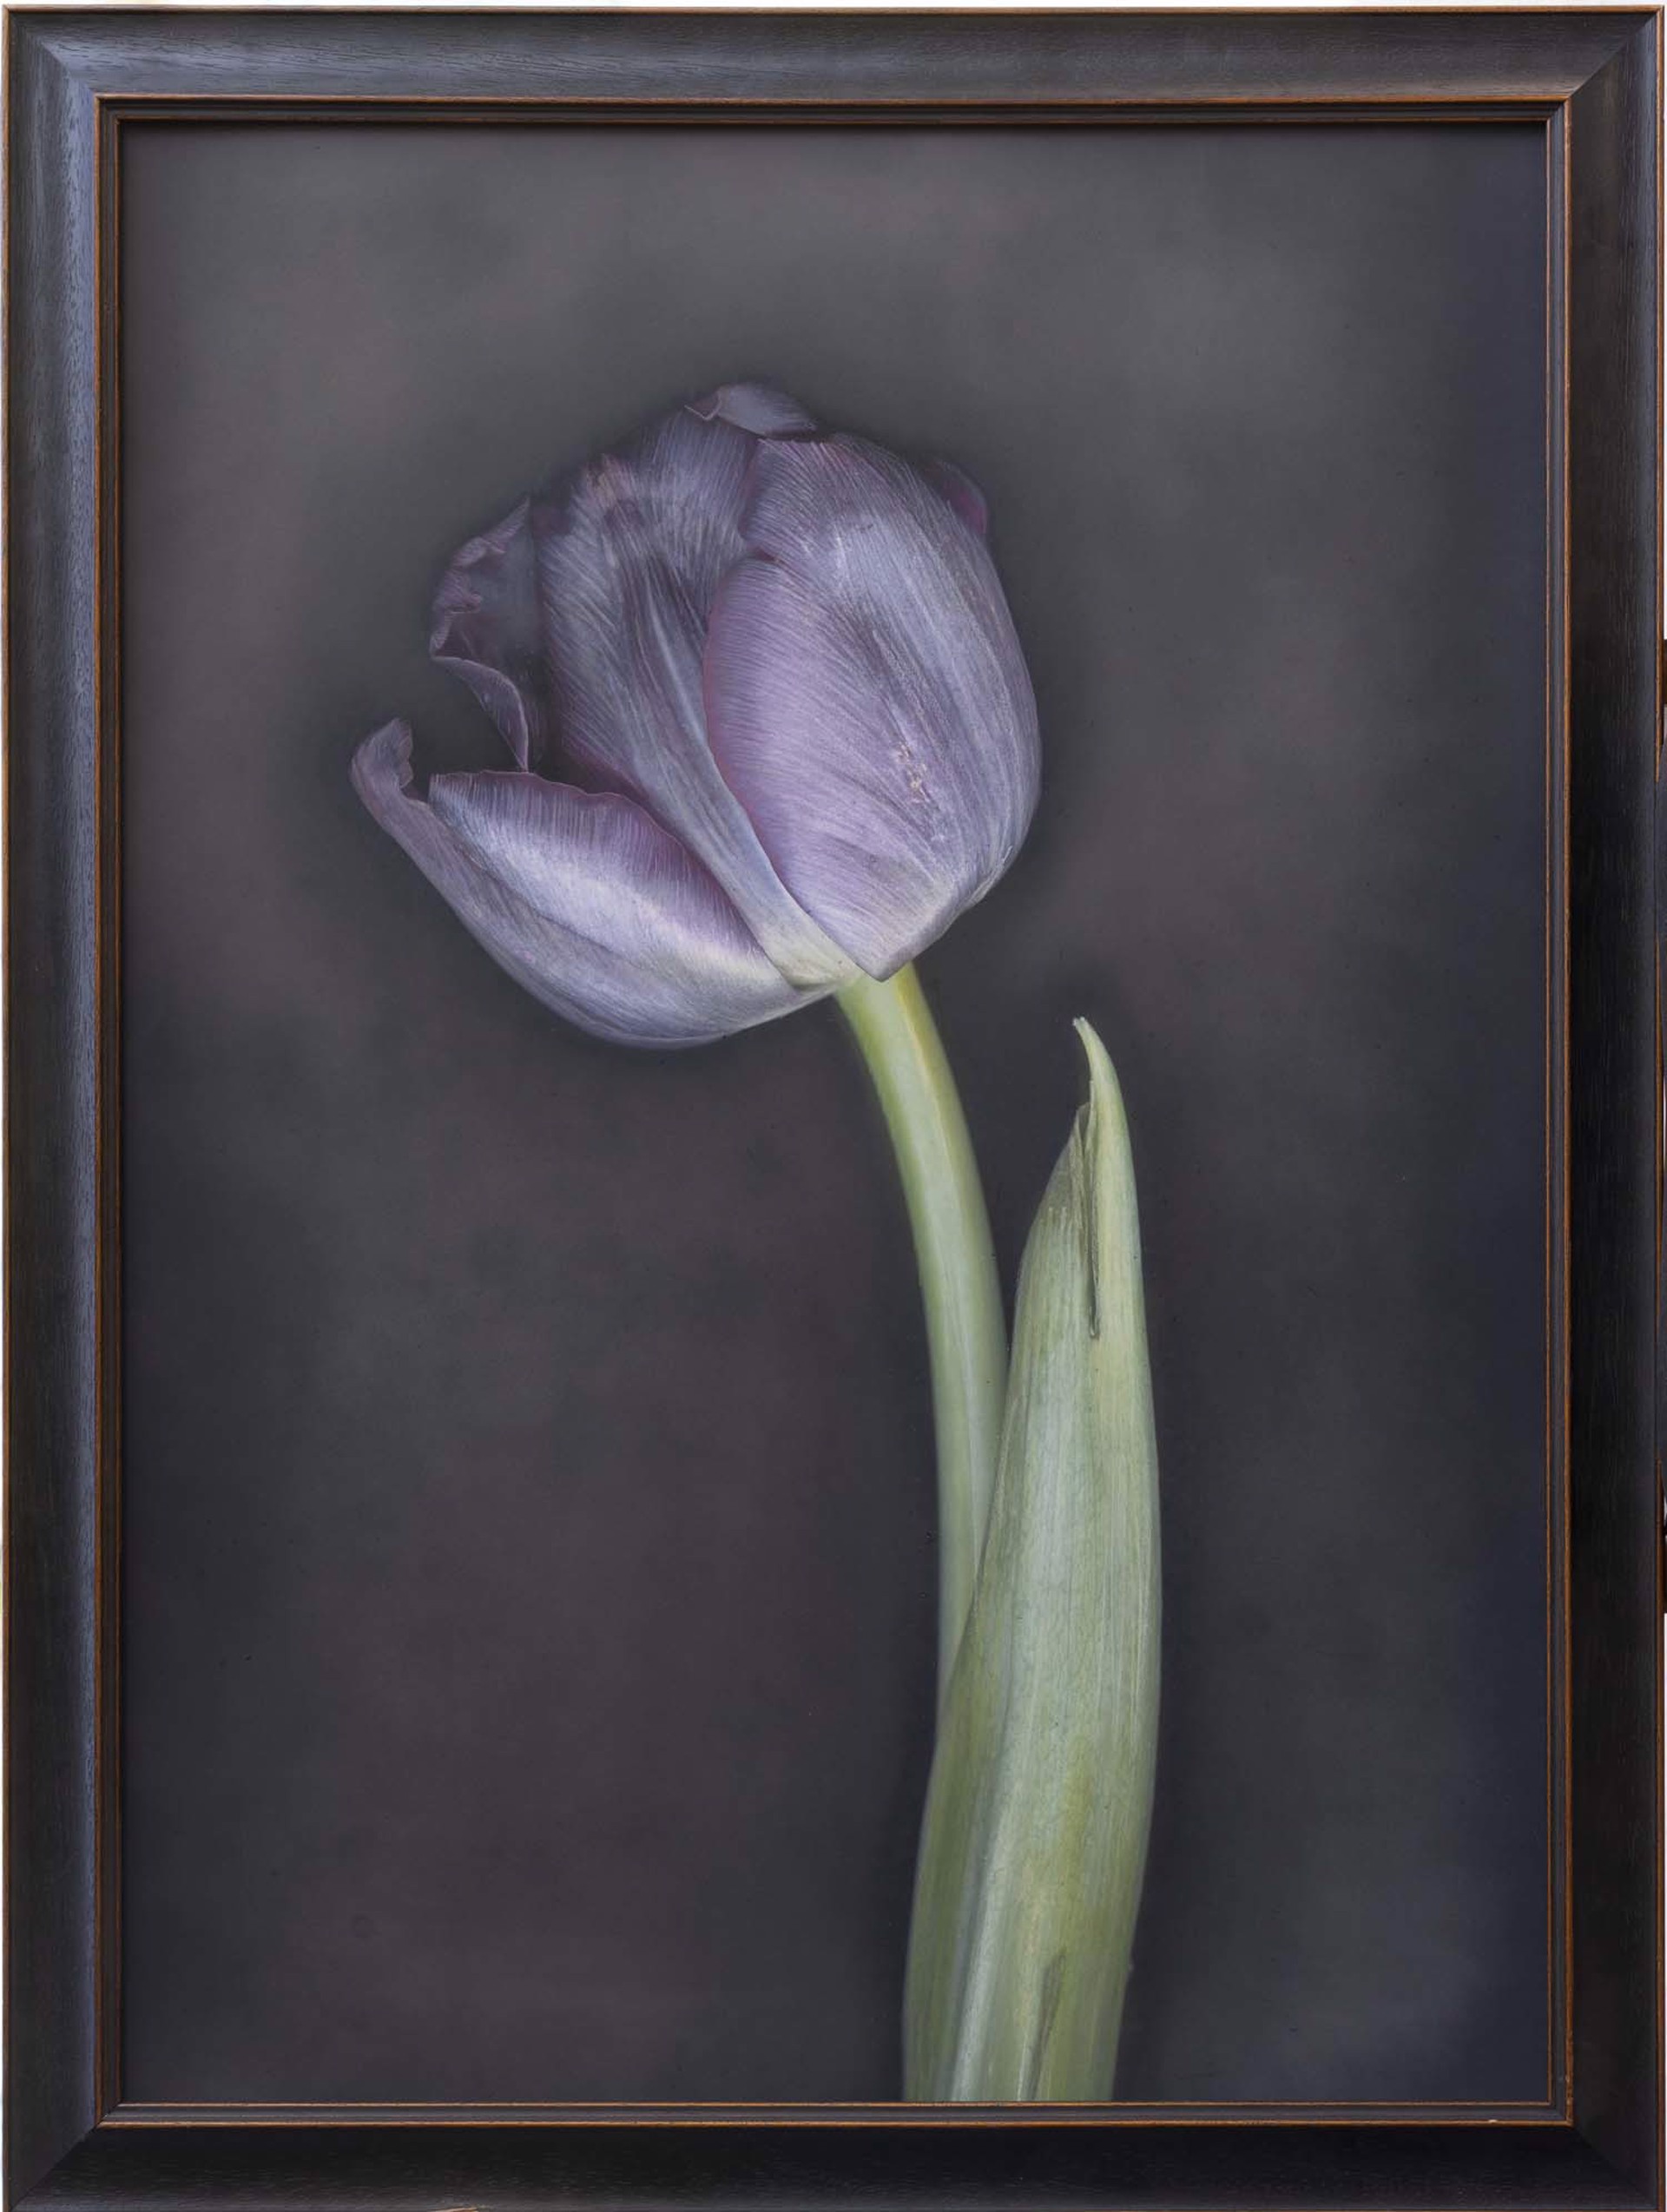 Black Tulip VI by Kate Breakey